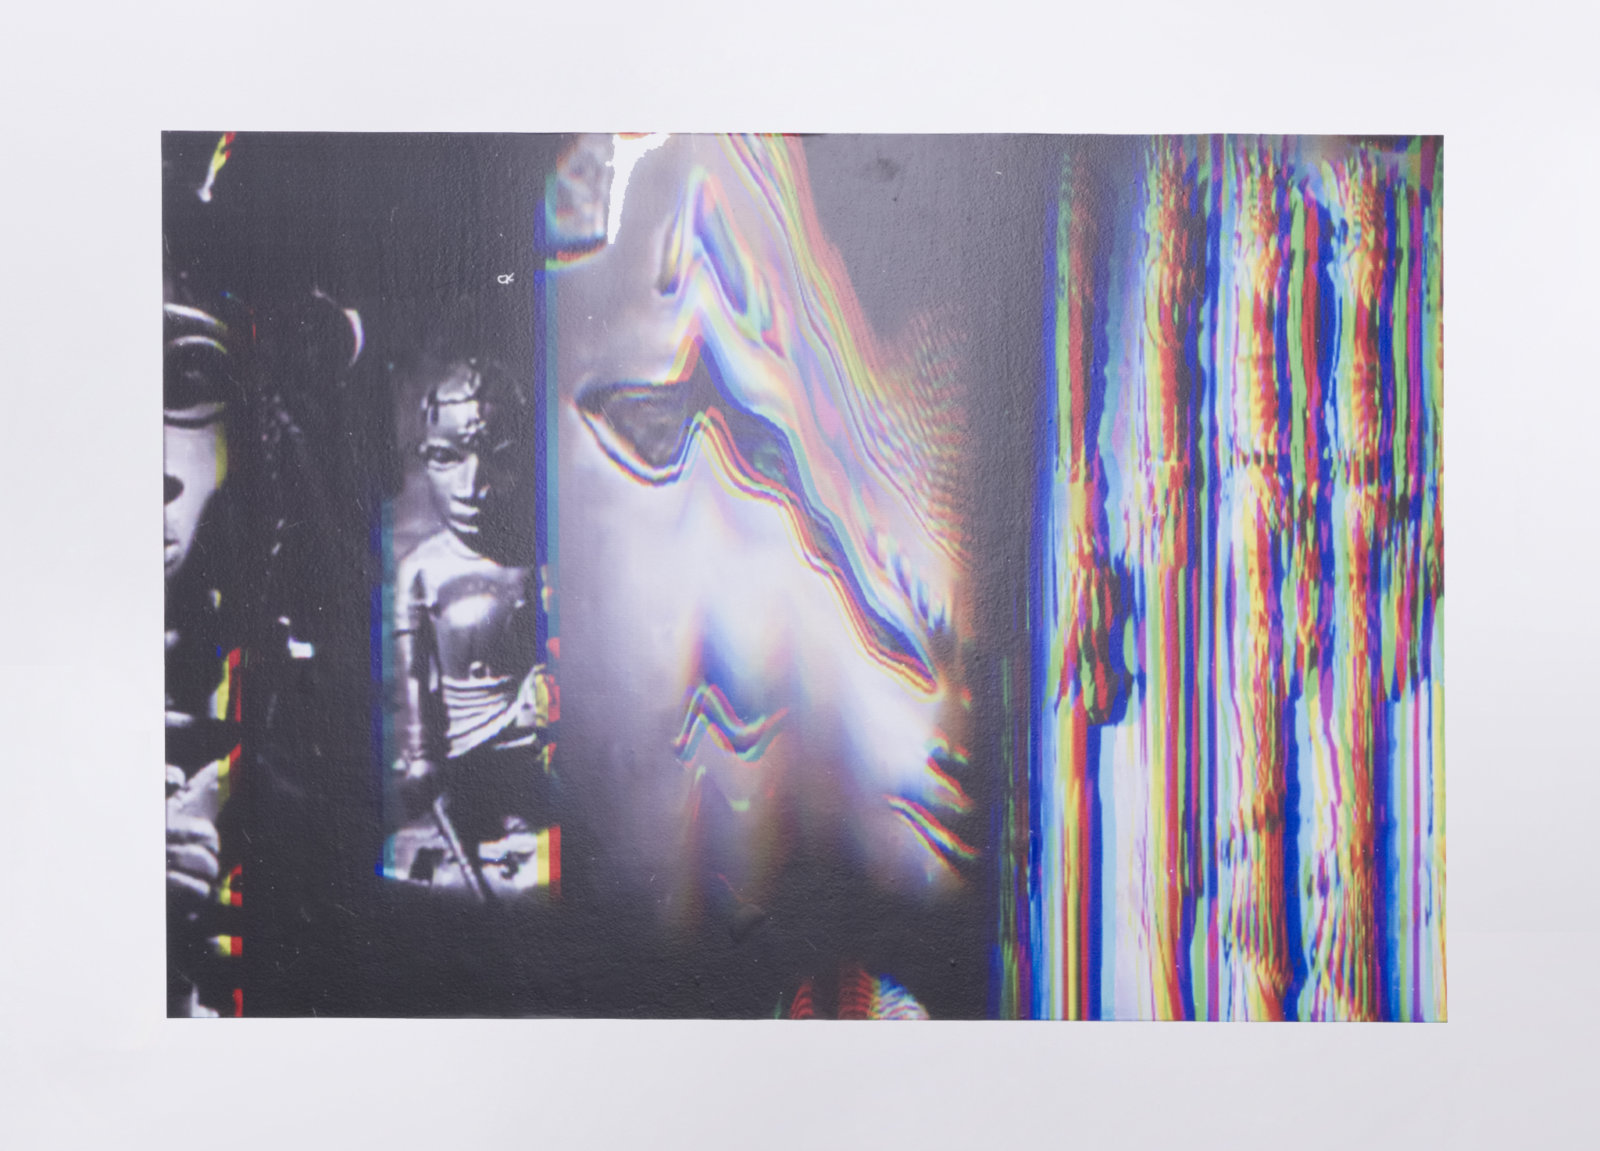 Raymond Boisjoly, Their Makers (Worlds), 2015, solvent-based inkjet print on vinyl, 52 x 75 in. (132 x 191 cm)